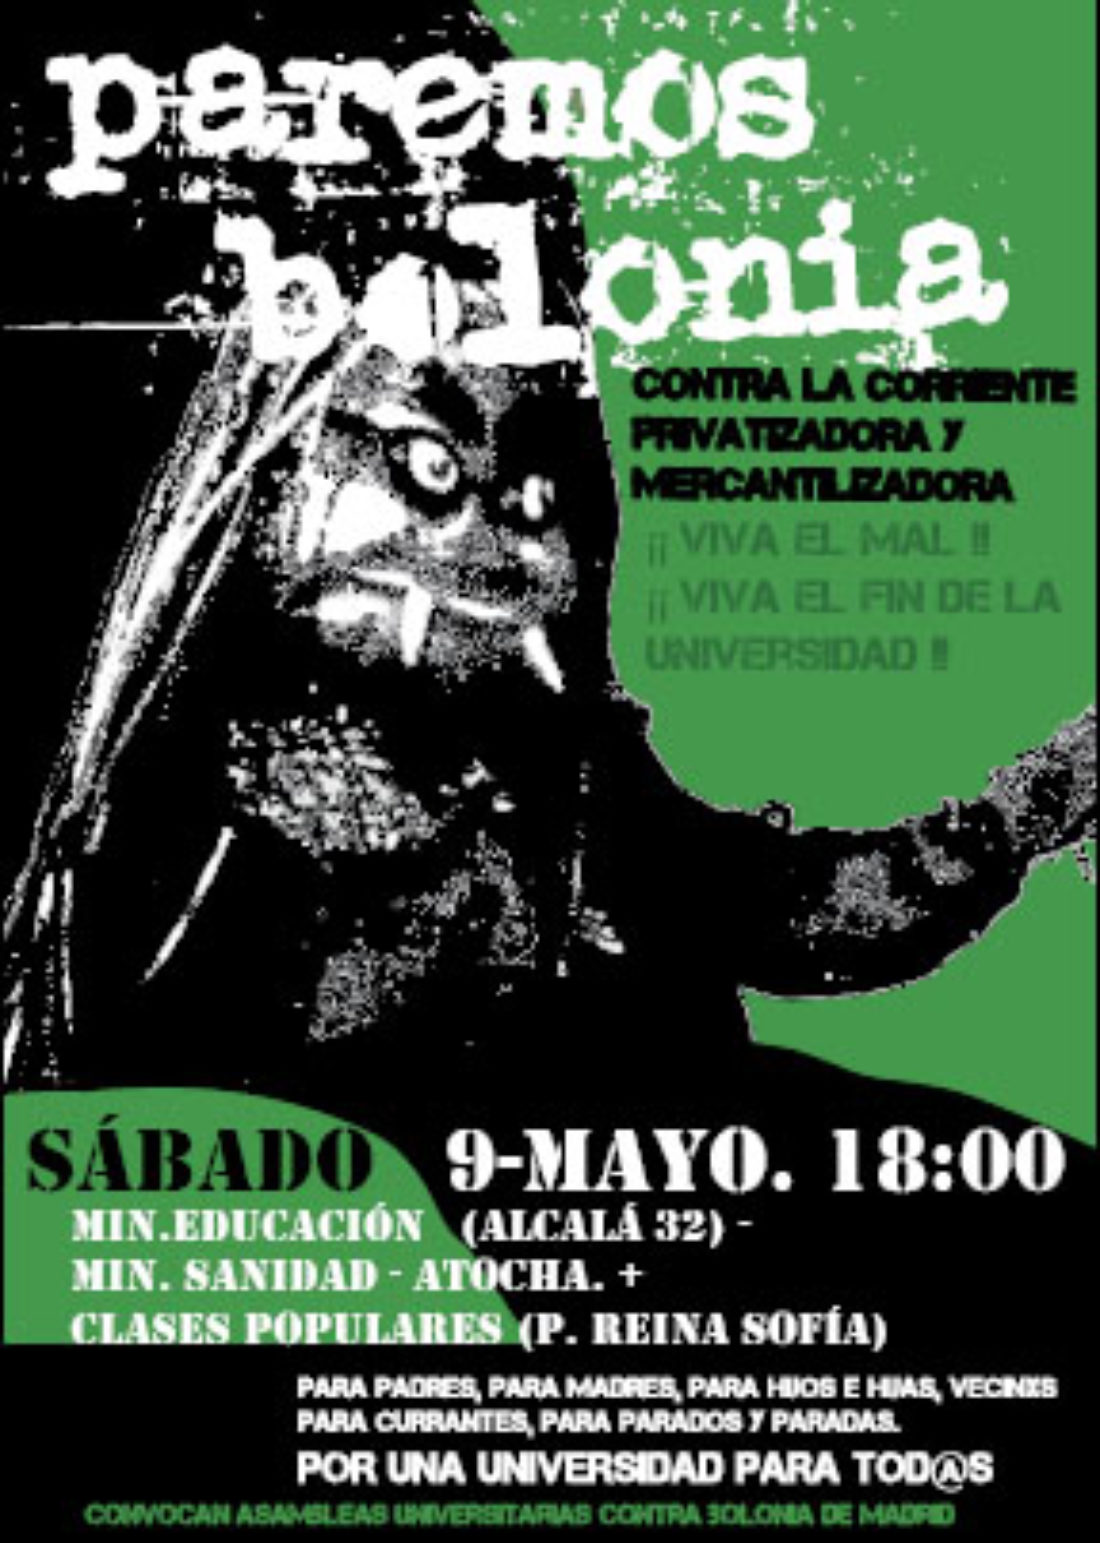 Madrid : manifestación 9 de mayo. Paremos Bolonia. Contra la Corriente Privatizadora y Mercantilizadora